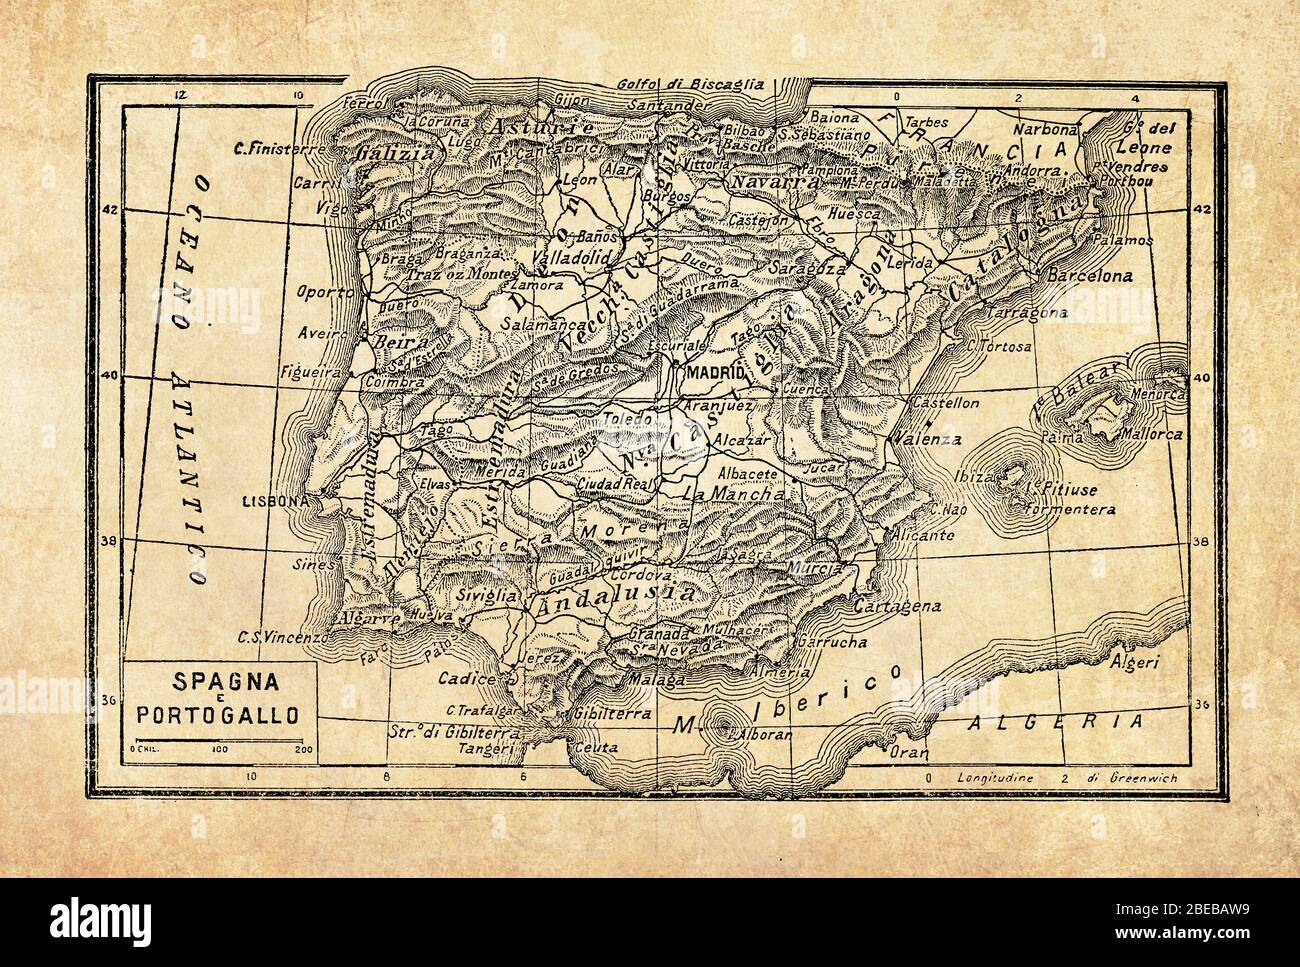 Alte Landkarten Spaniens Land auf der Iberischen Halbinsel im Südwesten Europas über die Straße von Gibraltar und Küsten am Atlantik und dem Mittelmeer, mit geographischen italienischen Namen und Beschreibungen Stockfoto